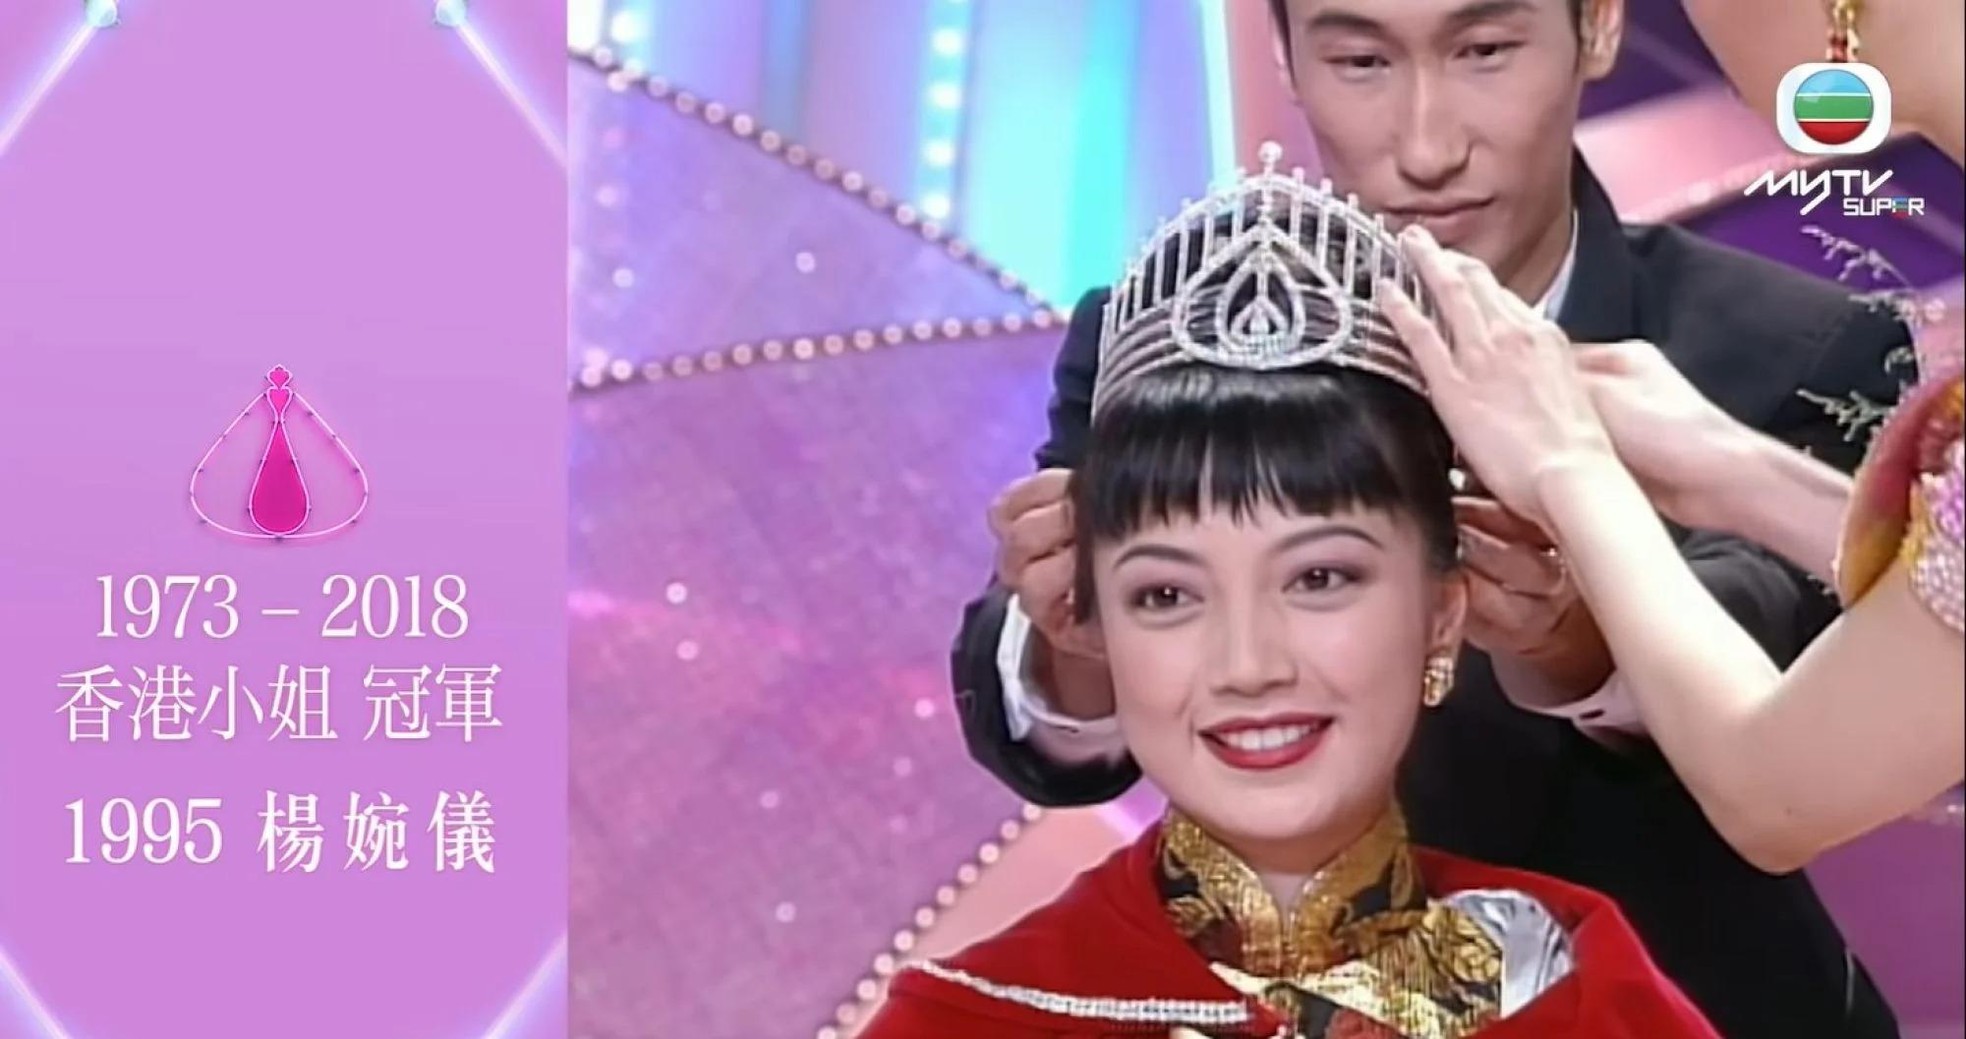 Hoa hậu Hong Kong: Người U50 vẫn độc thân, người bán vương miện trả nợ cho chồng - Ảnh 7.